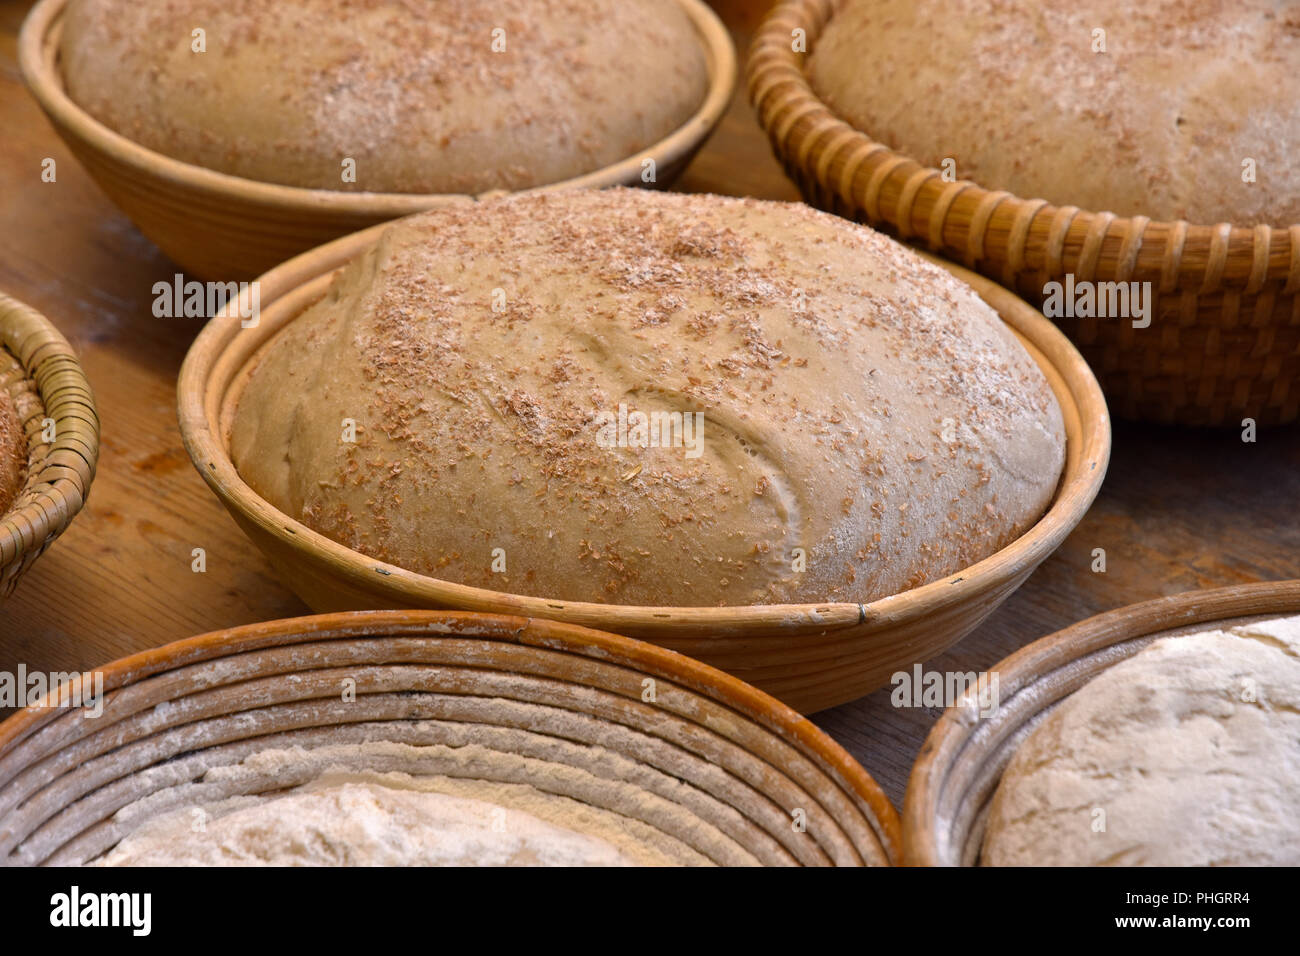 Brotteig; Brot backen; Bauernbrot; Stockfoto